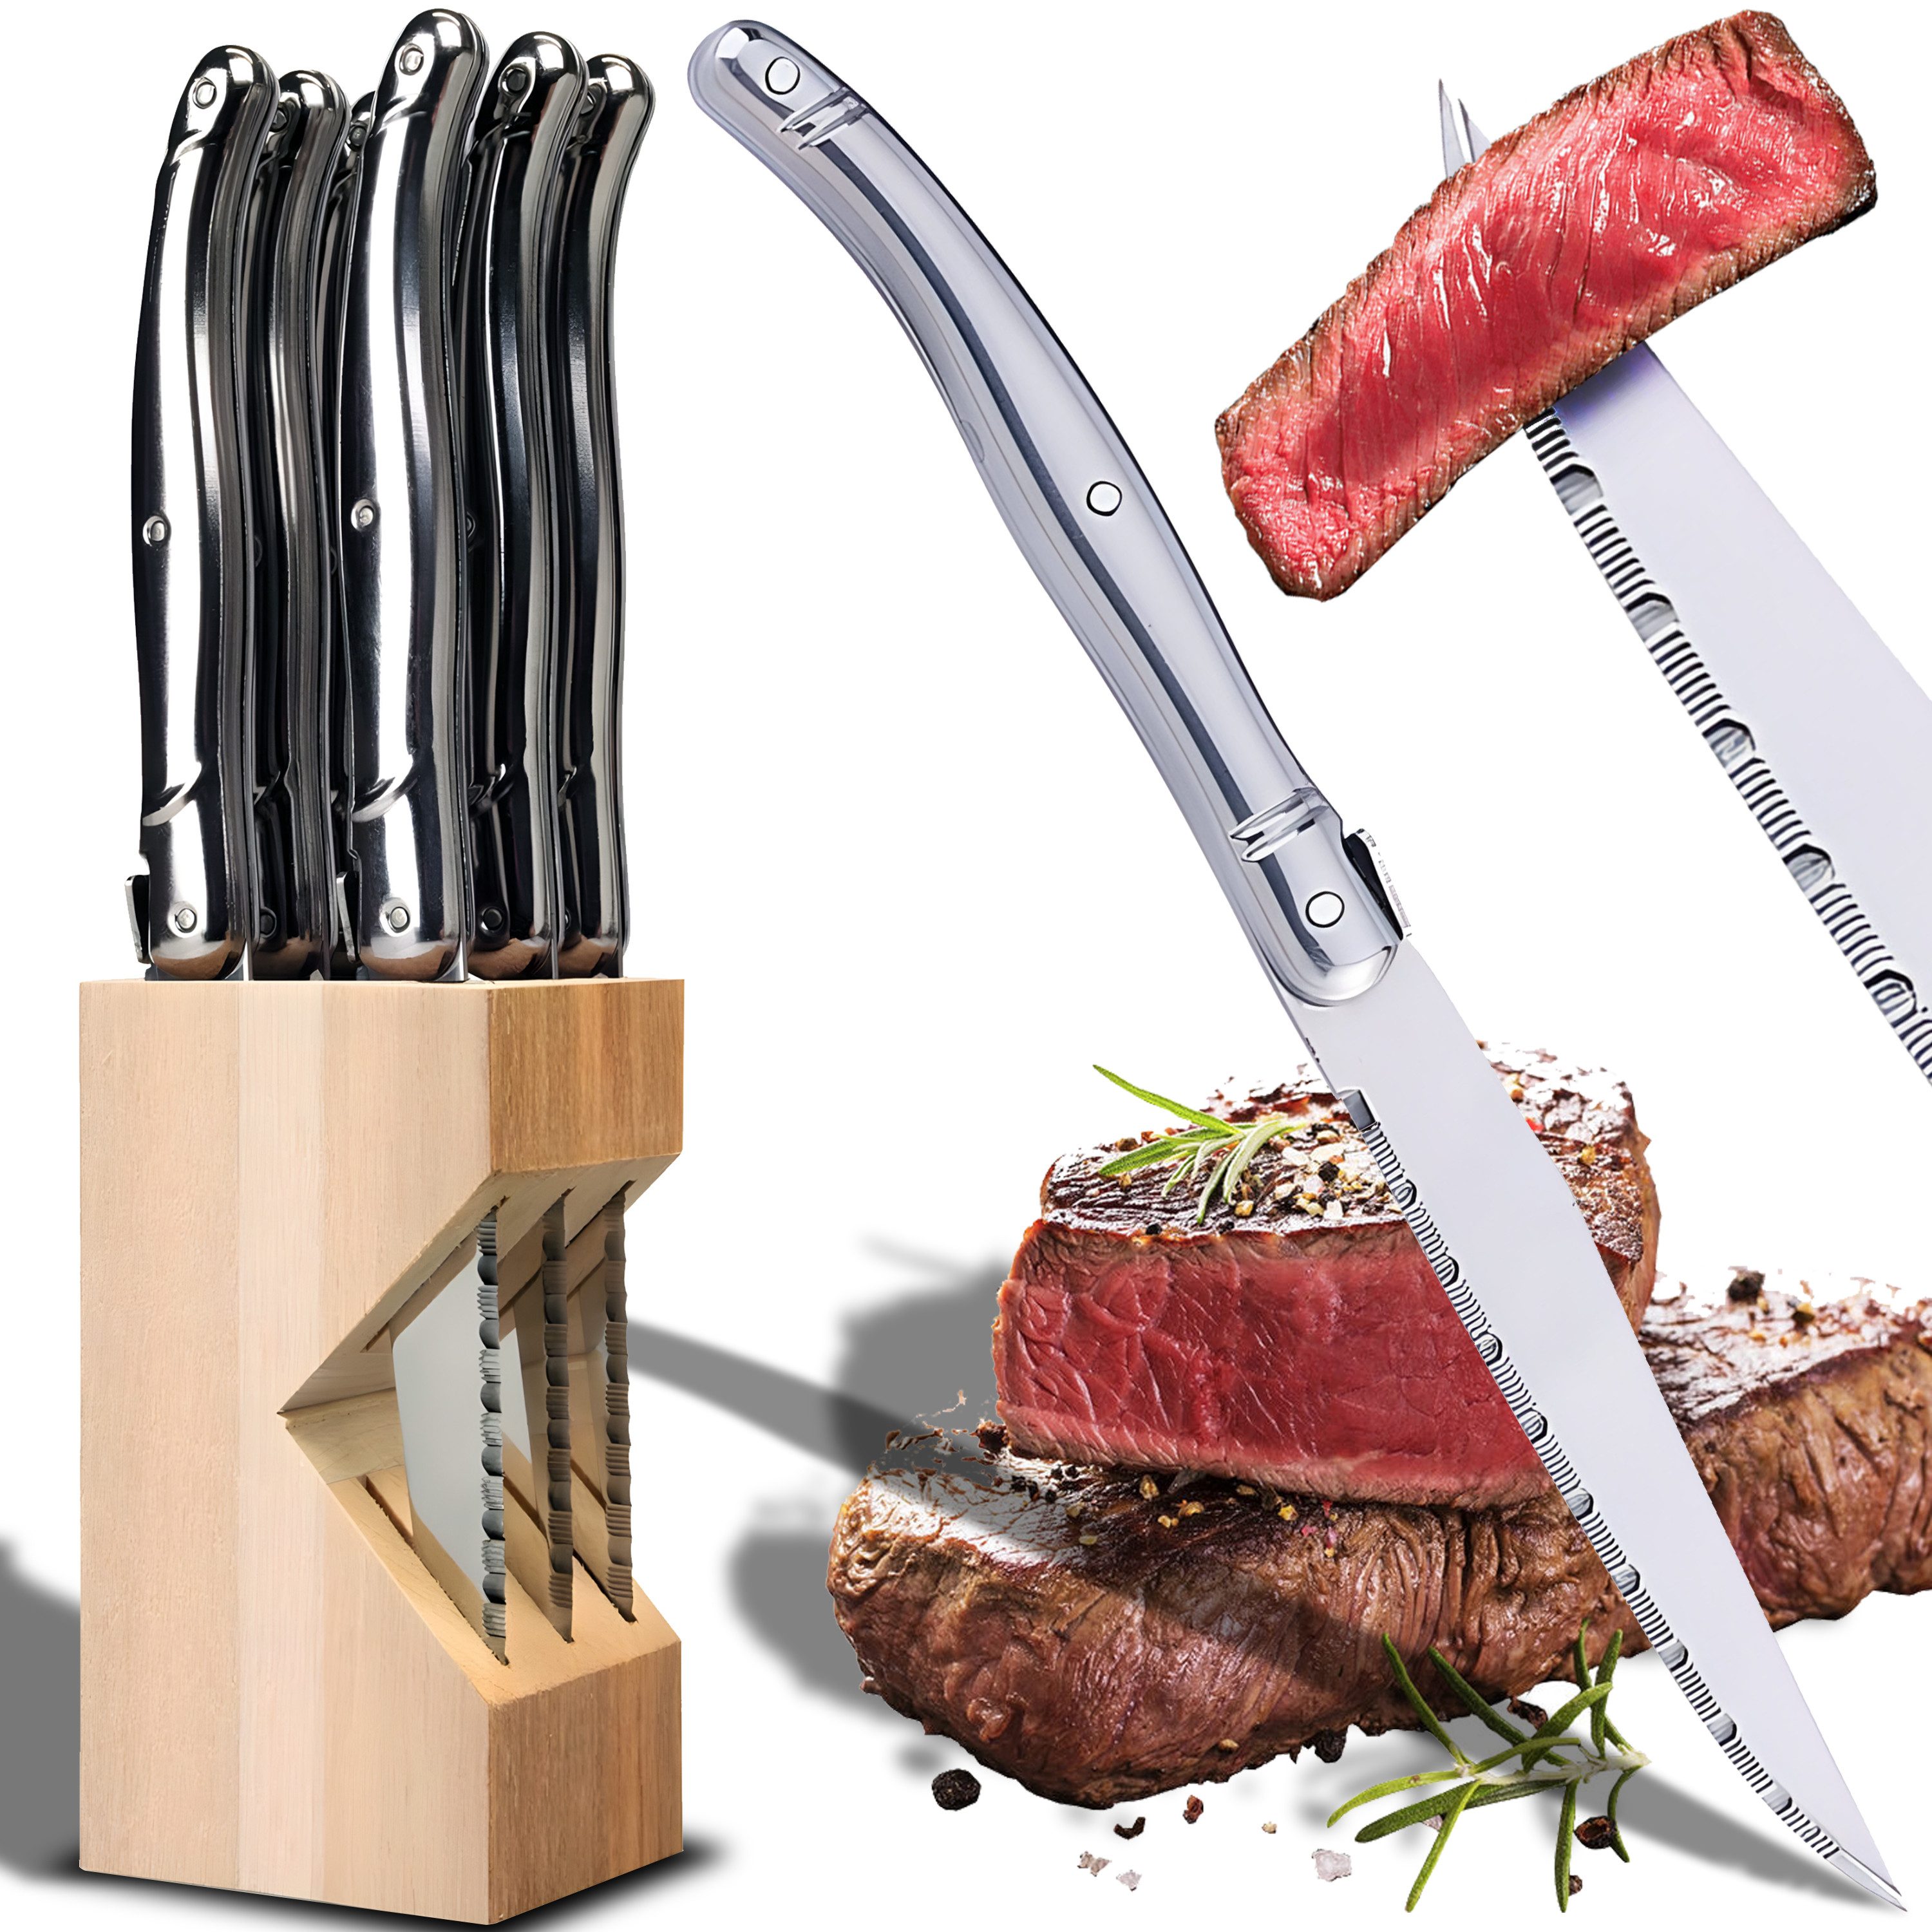 Retoo Steakmesser Küchenmesser Set 6-teilig Messerblock Holz Steakmesserset Messerset Komfortabler Griff, Gezahnte Klinge, Messerblock-Set, Profi-Set